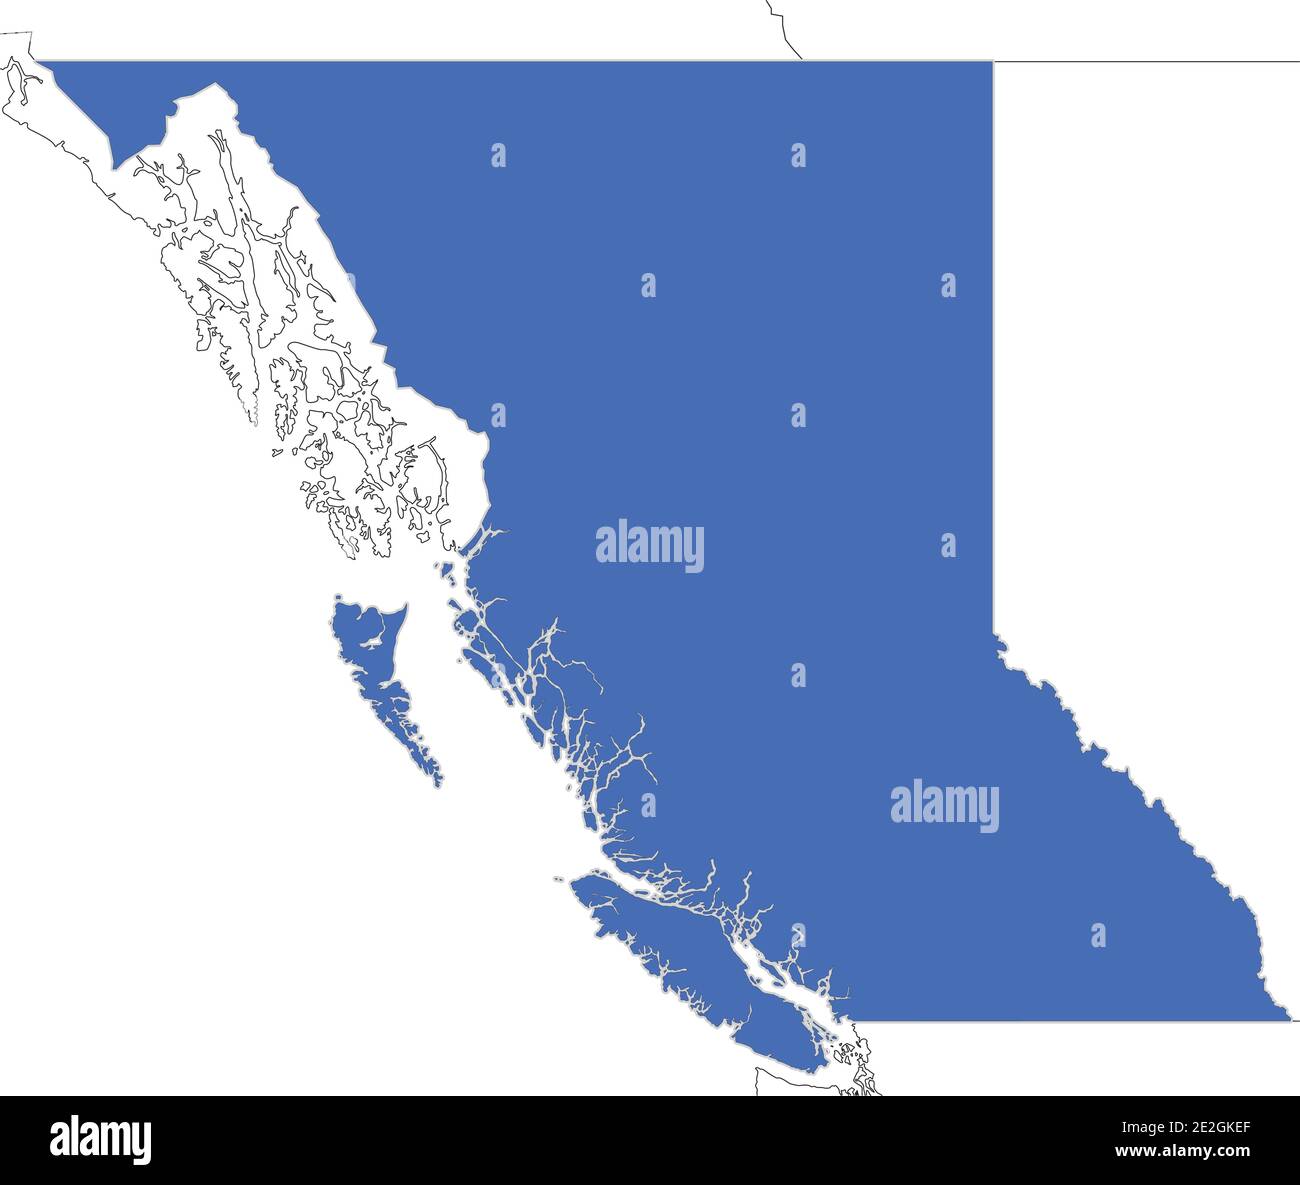 Carte simple de la Colombie-Britannique, province du Canada avec les contours des régions voisines comme le Yukon, les Territoires du Nord-Ouest et l'Alberta. Illustration de Vecteur